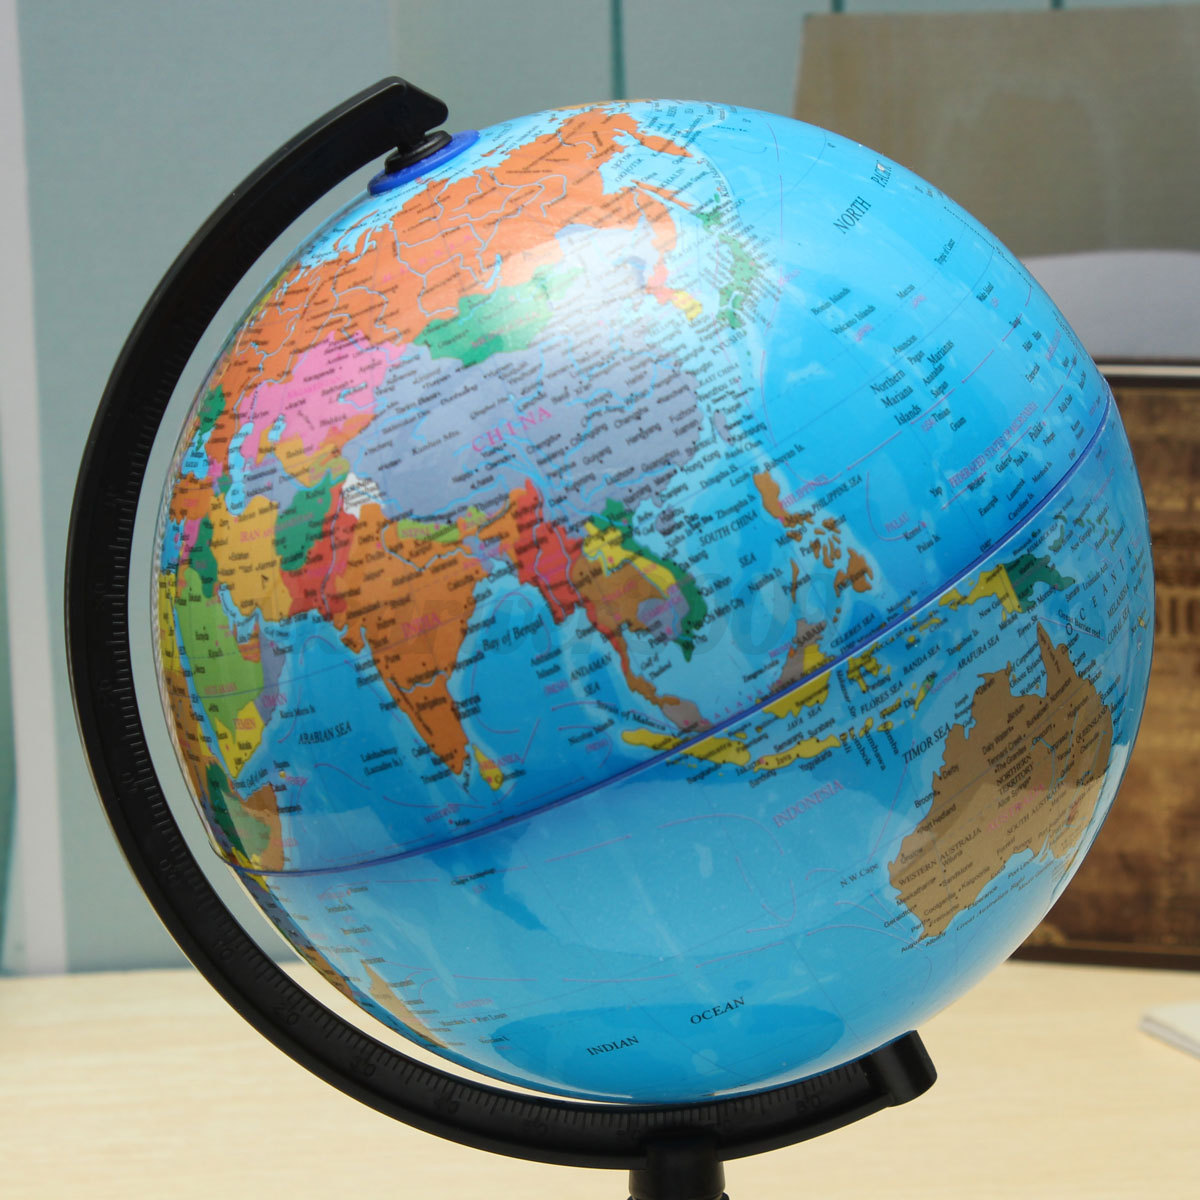 World map globe view - publishingple